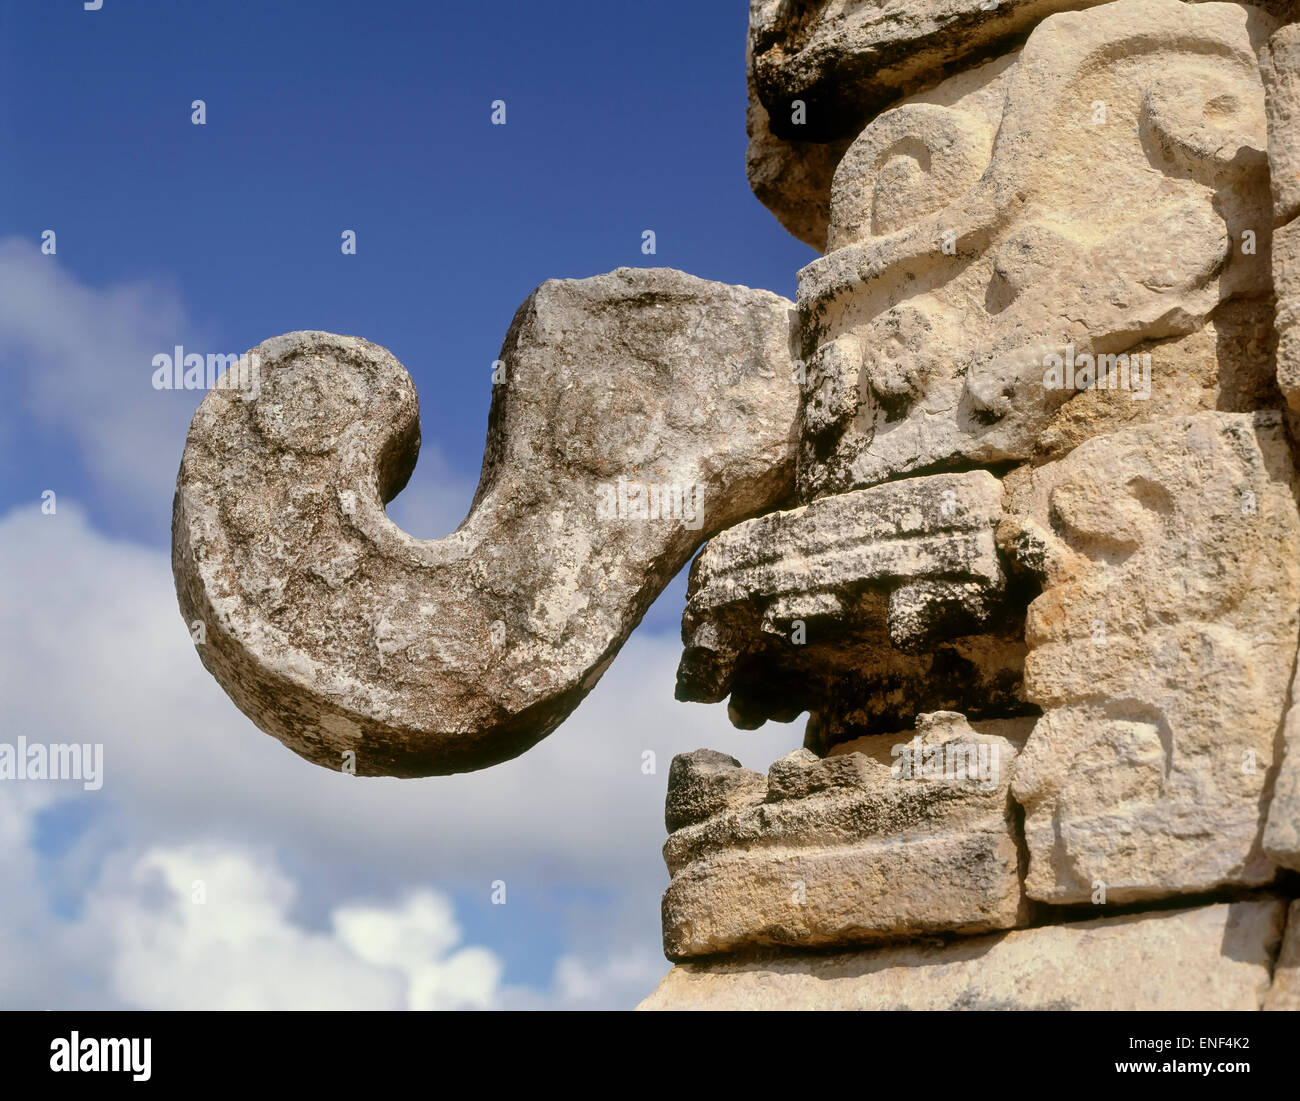 Chichen-Itza, Yucatan, Mexico. Mask of Chaac the Rain God. The Pre-Hispanic City of Chichen-Itza is a UNESCO World Heritage Site Stock Photo